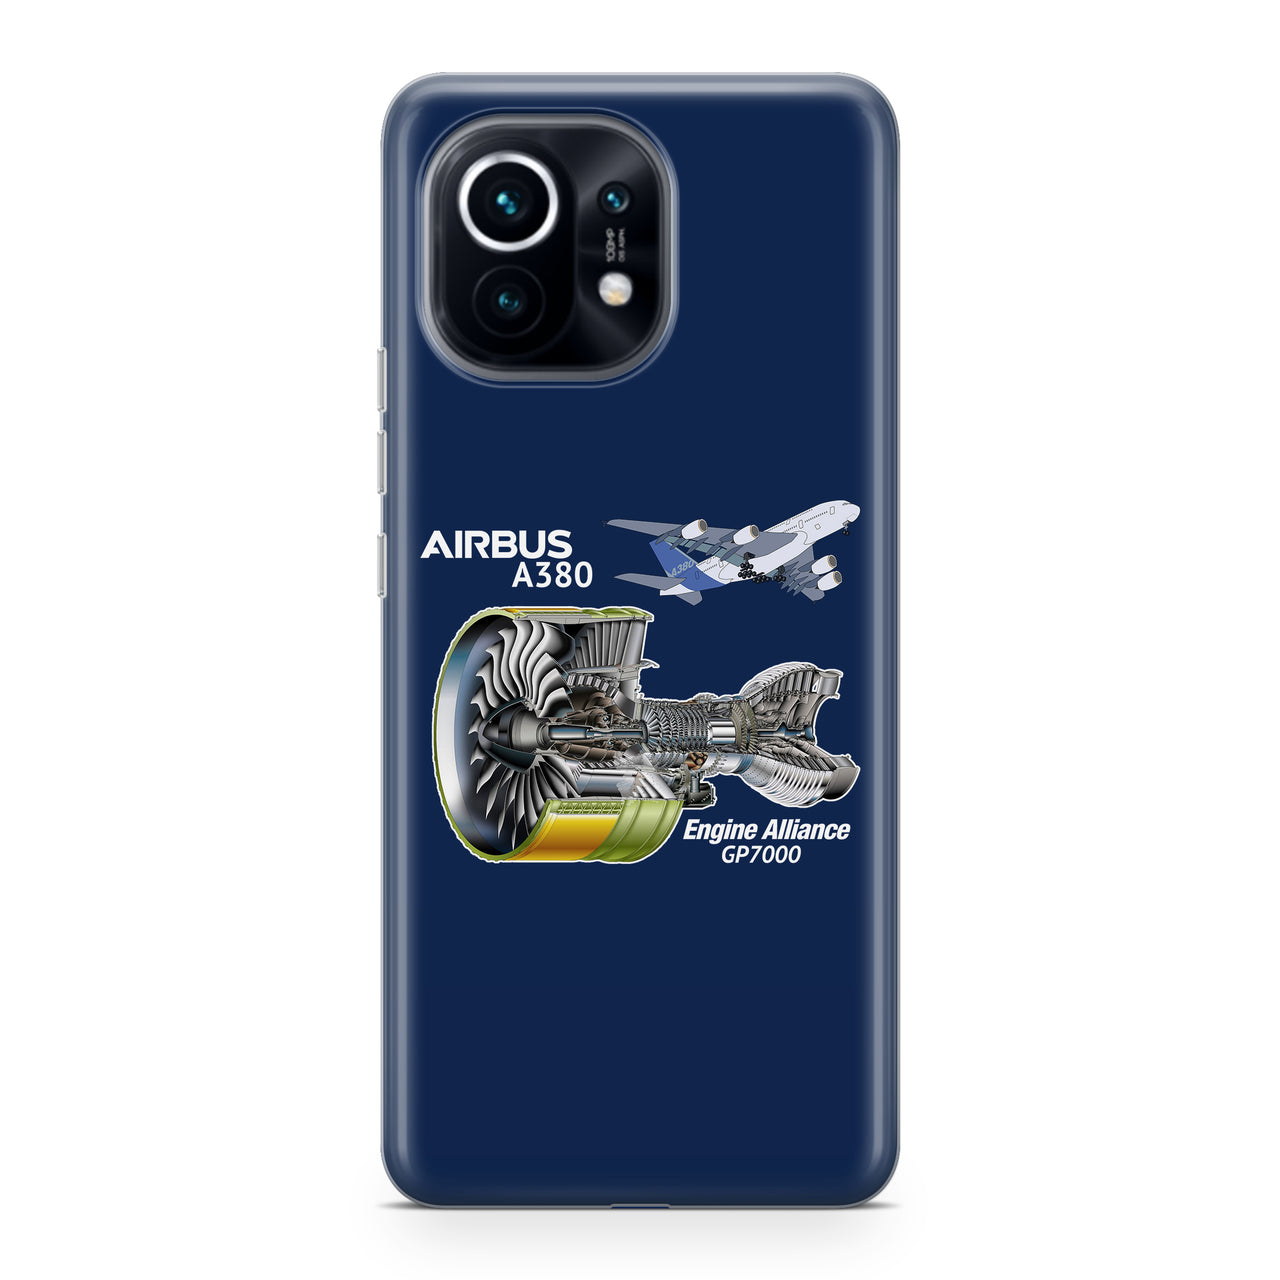 Airbus A380 & GP7000 Engine Designed Xiaomi Cases